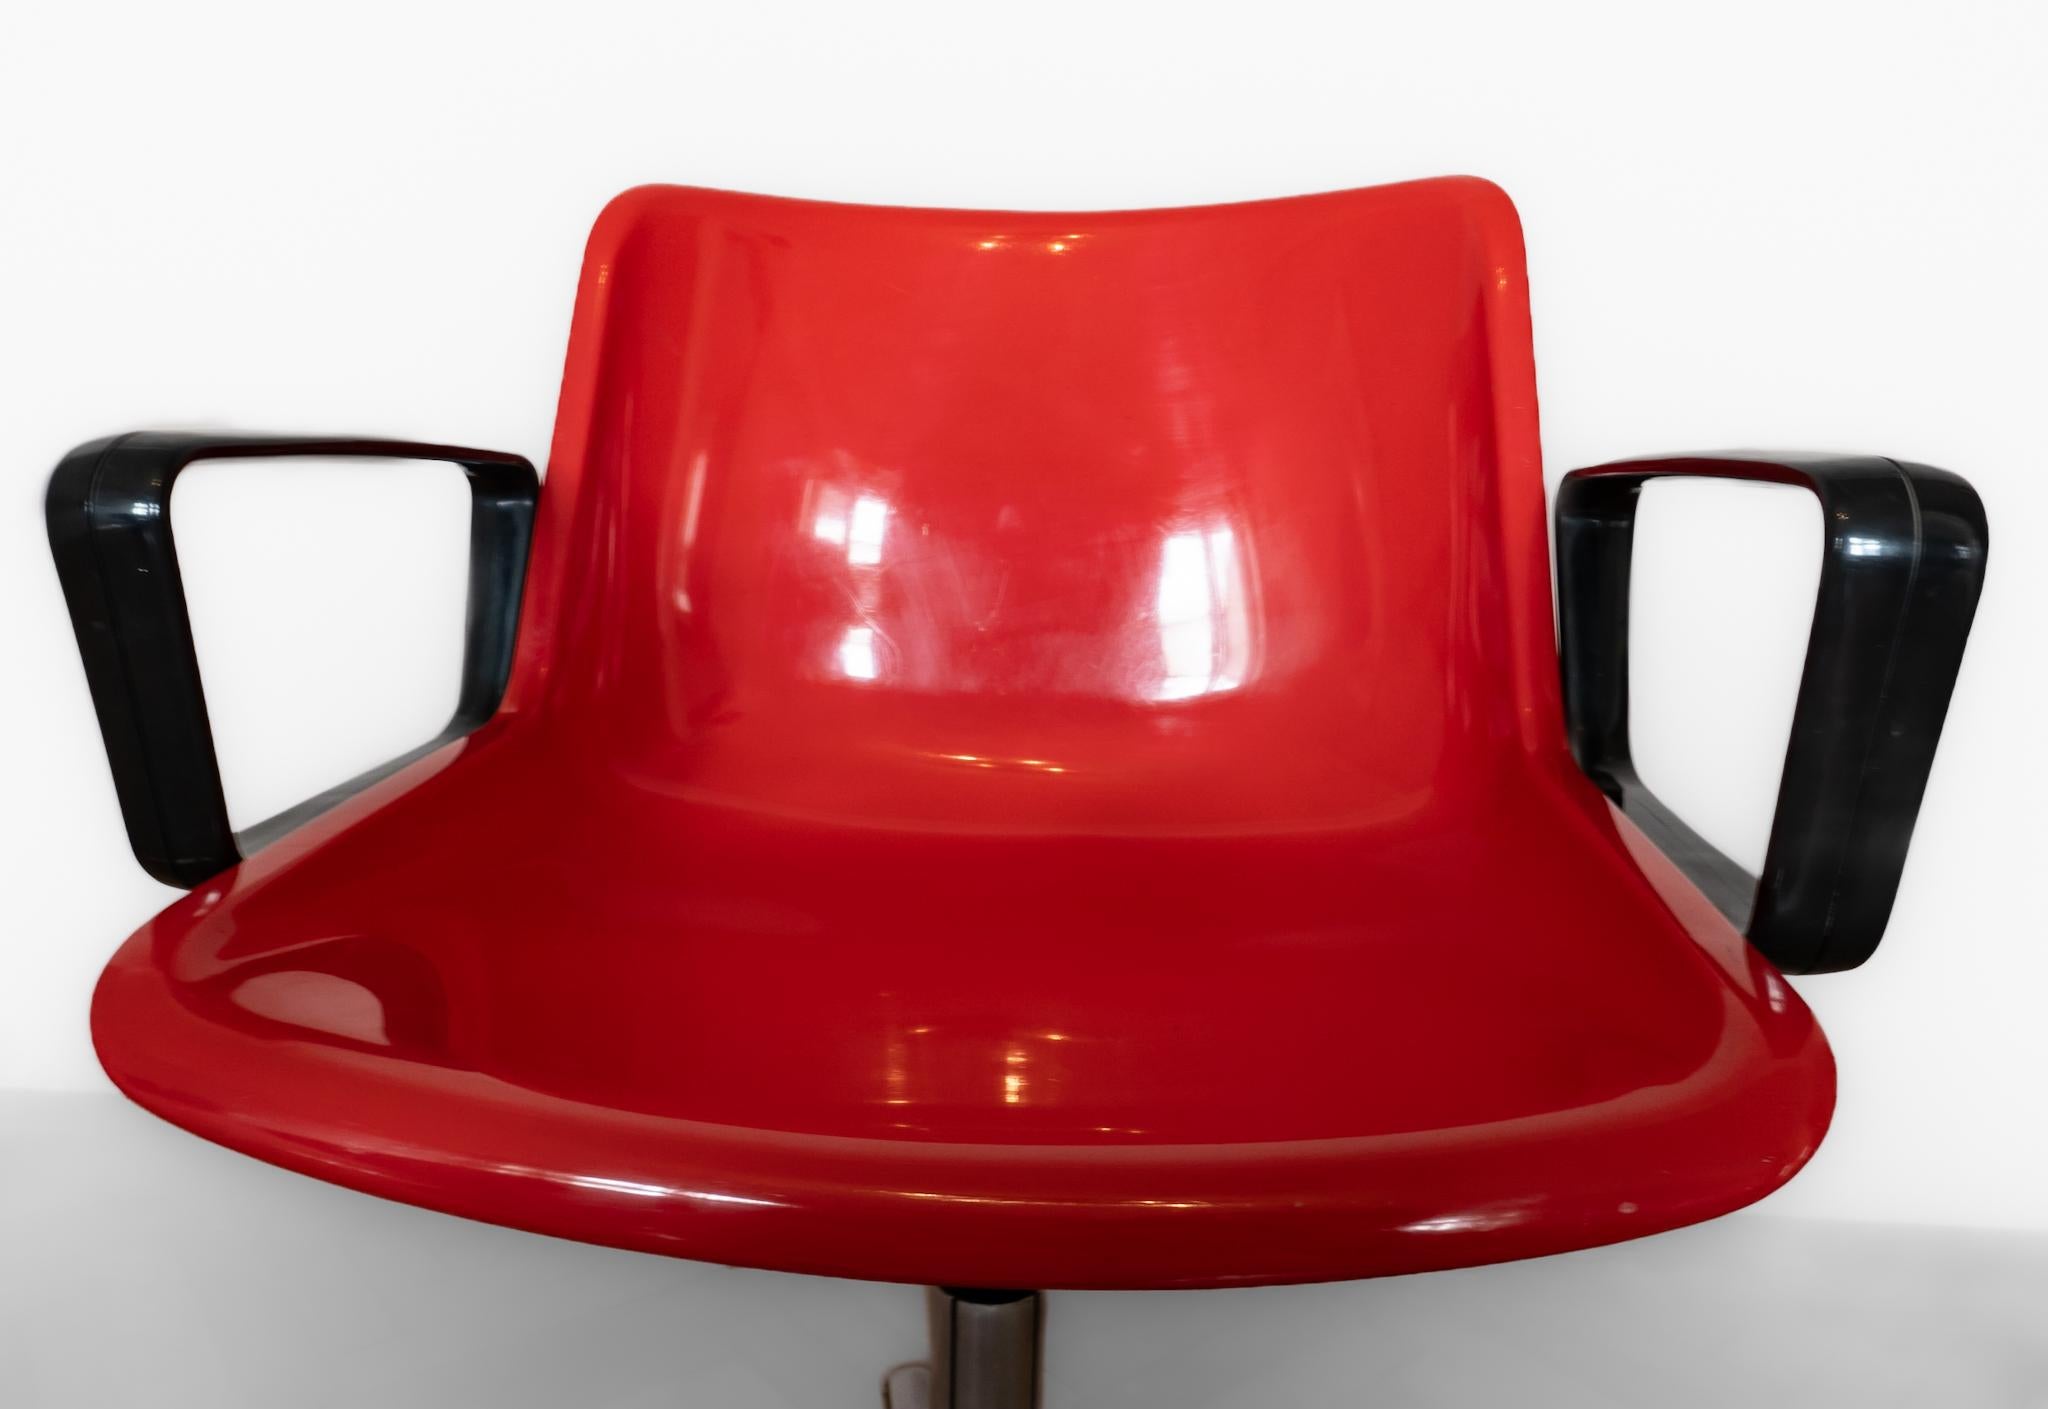 Chaise de bureau rouge Modus 5 avec accoudoirs par Osvaldo Borsani, Italie, années 1970.

Rehaussez votre espace de travail avec l'intemporelle chaise de bureau italienne rouge 